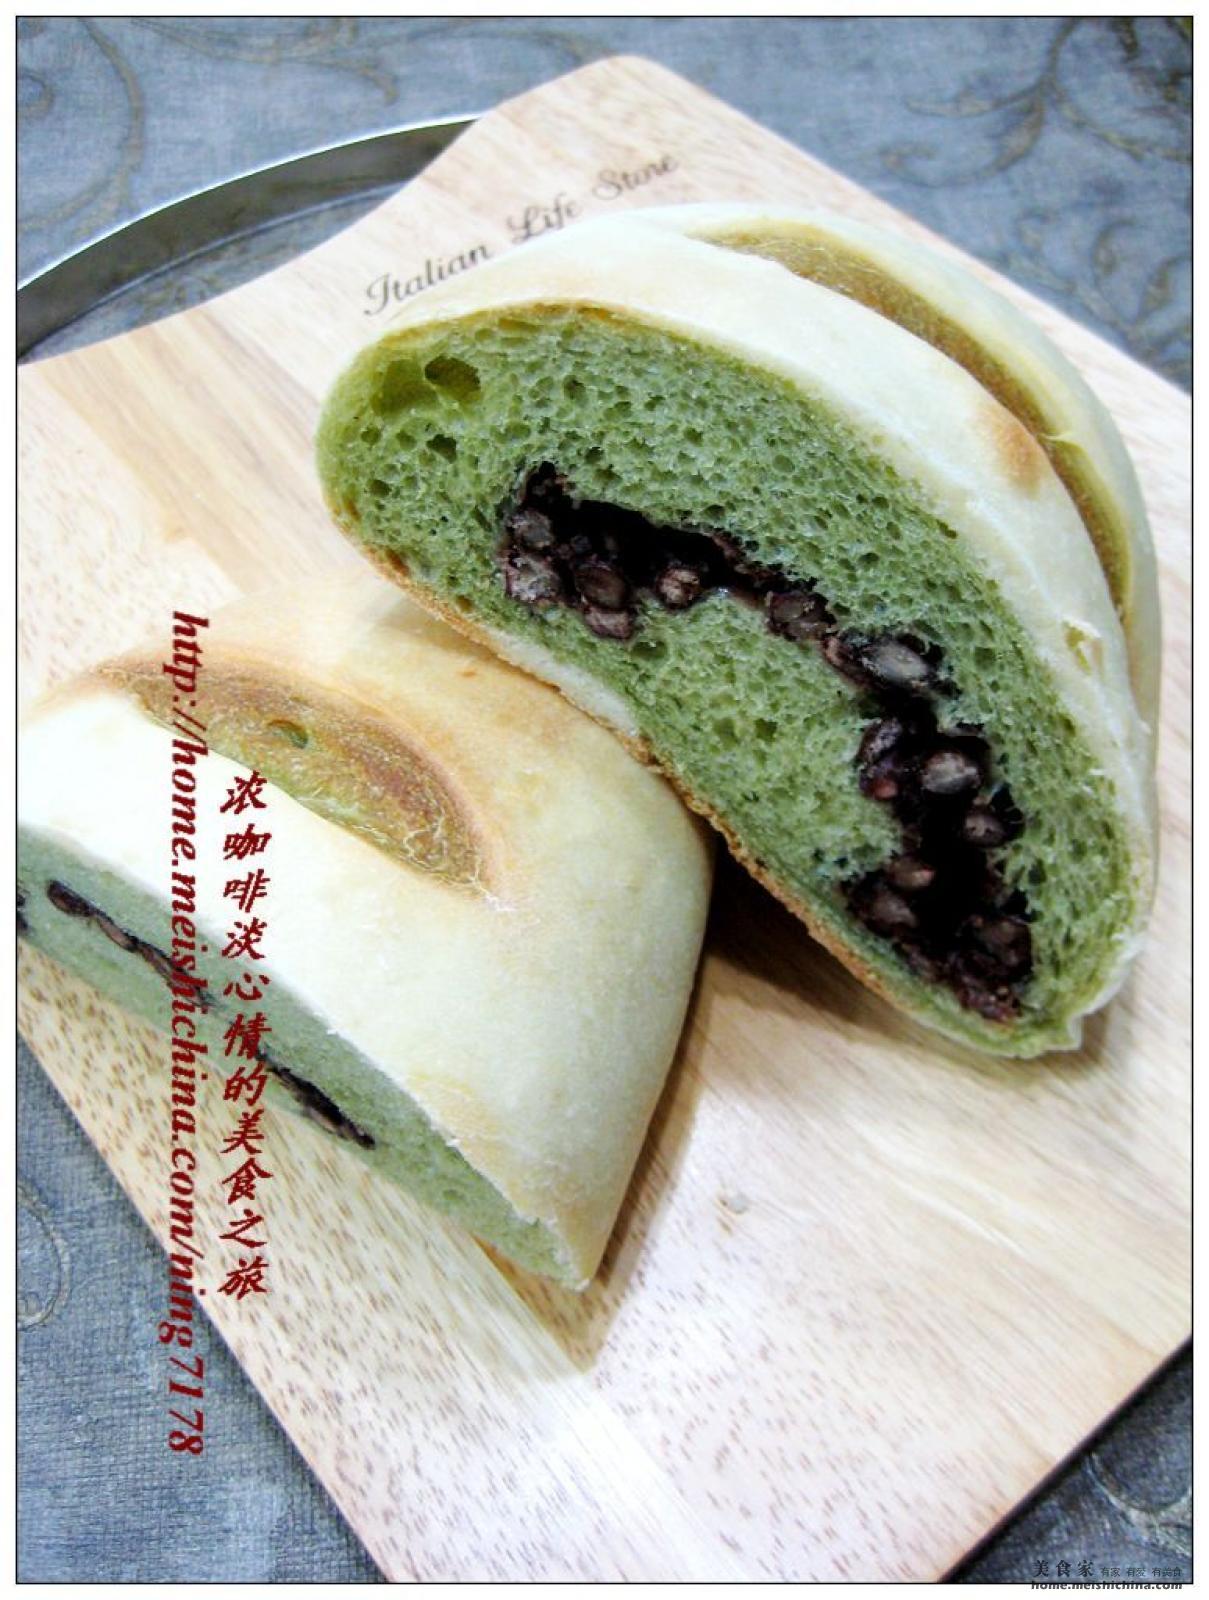 8.27生活日记 焙叔的店肉桂樱桃抹茶米面包 - 哔哩哔哩